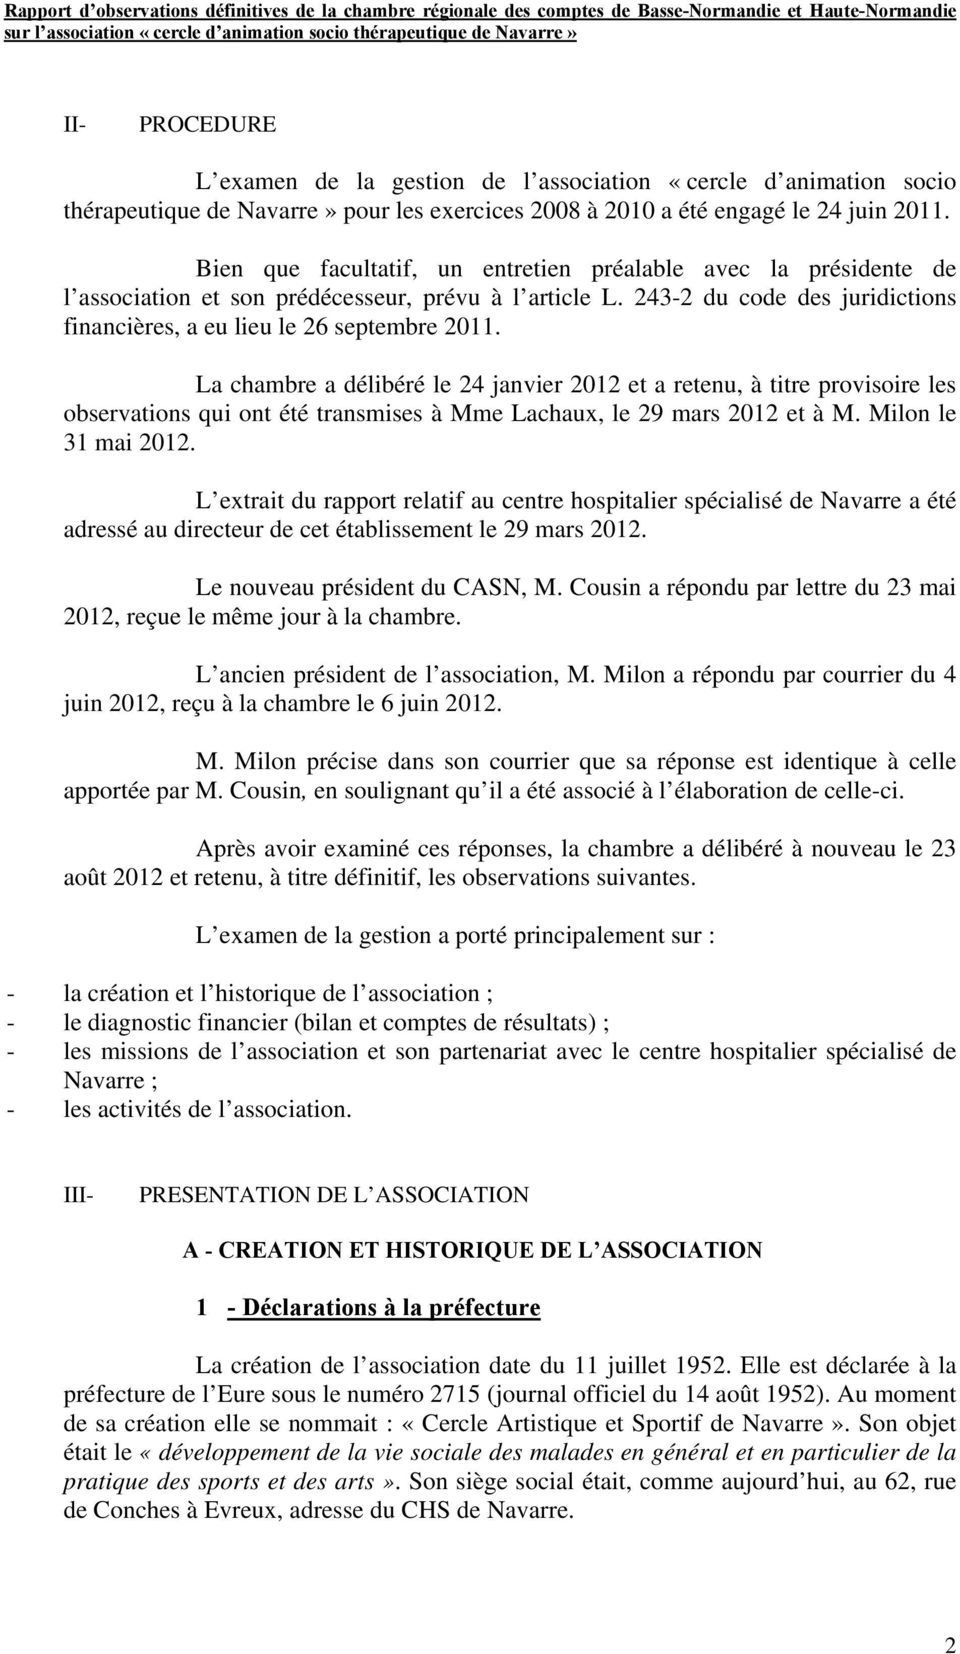 La chambre a délibéré le 24 janvier 2012 et a retenu, à titre provisoire les observations qui ont été transmises à Mme Lachaux, le 29 mars 2012 et à M. Milon le 31 mai 2012.